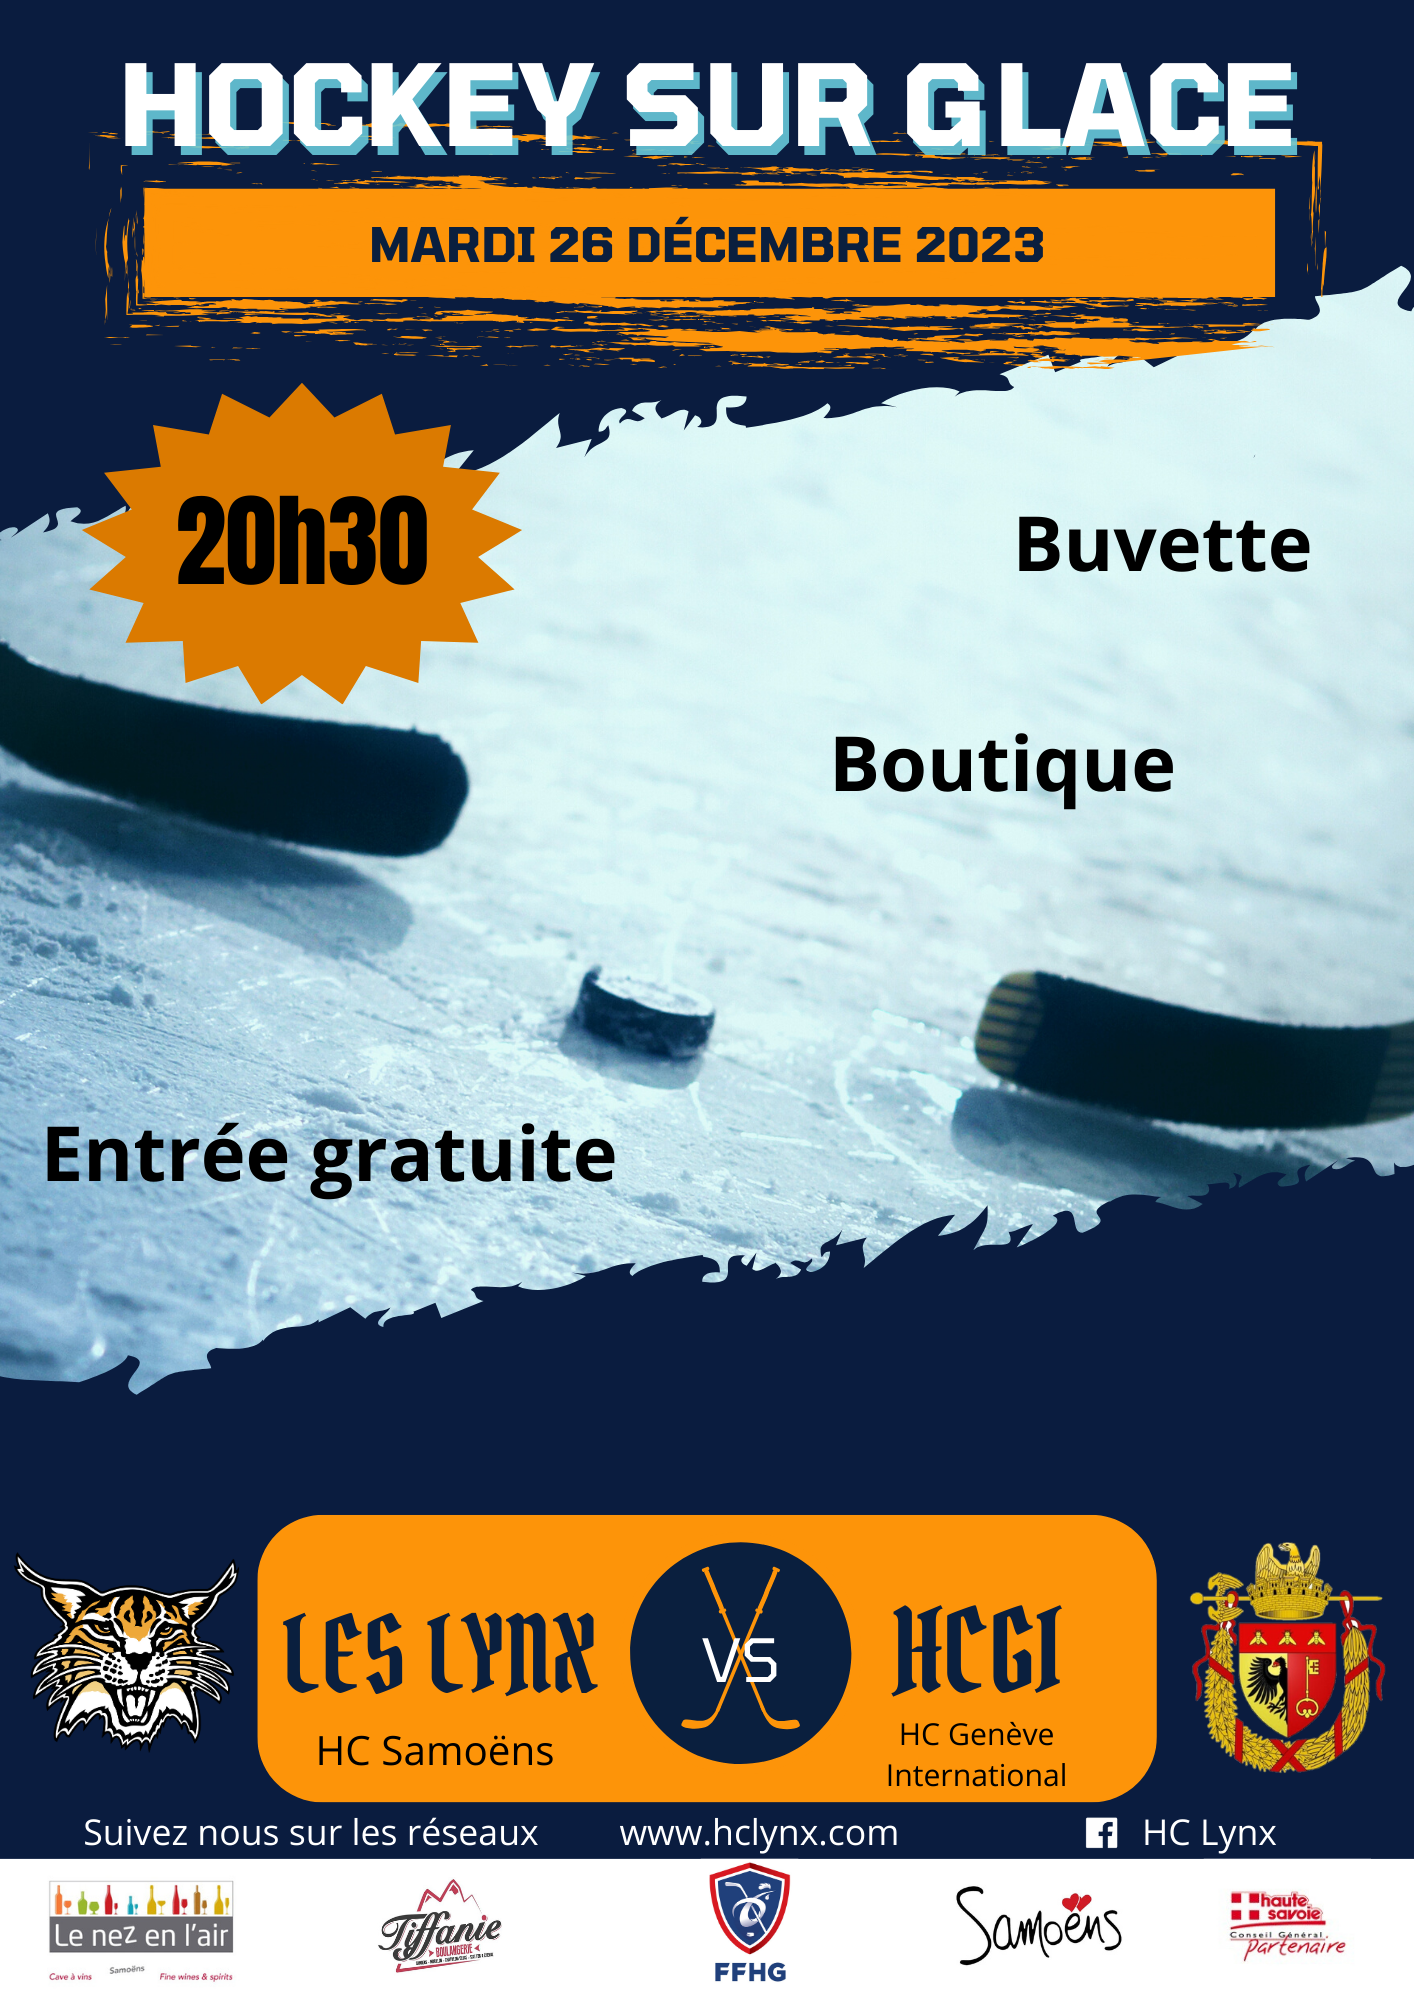 SPORT / 1er match du HC Les Lynx le mardi 26 décembre